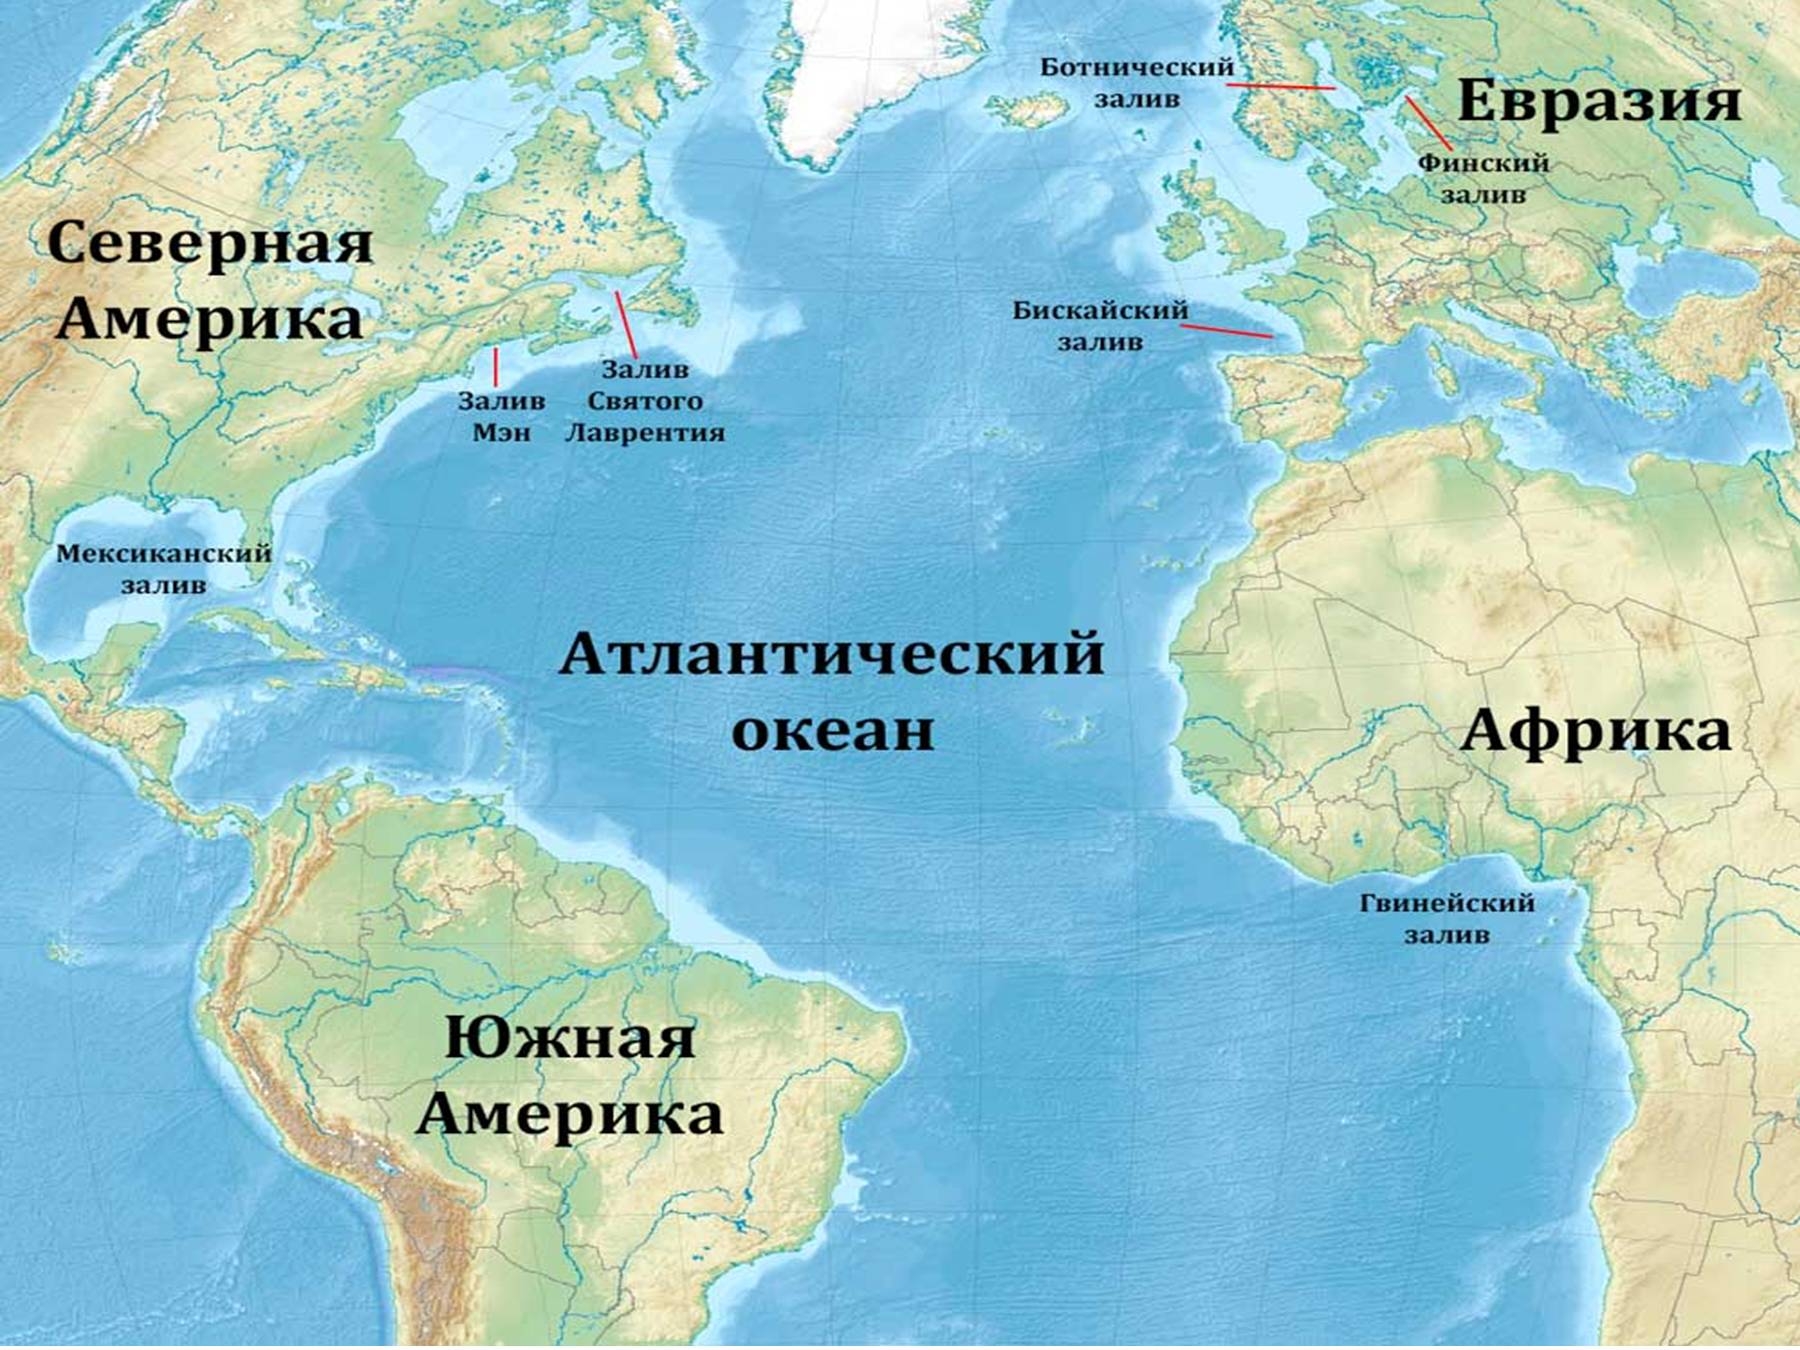 Океаны у берегов южной америки. Атлантический океан на карте. Атлантический океан на коте. Анилантическиц акеан на картк. Территория Атлантического океана.